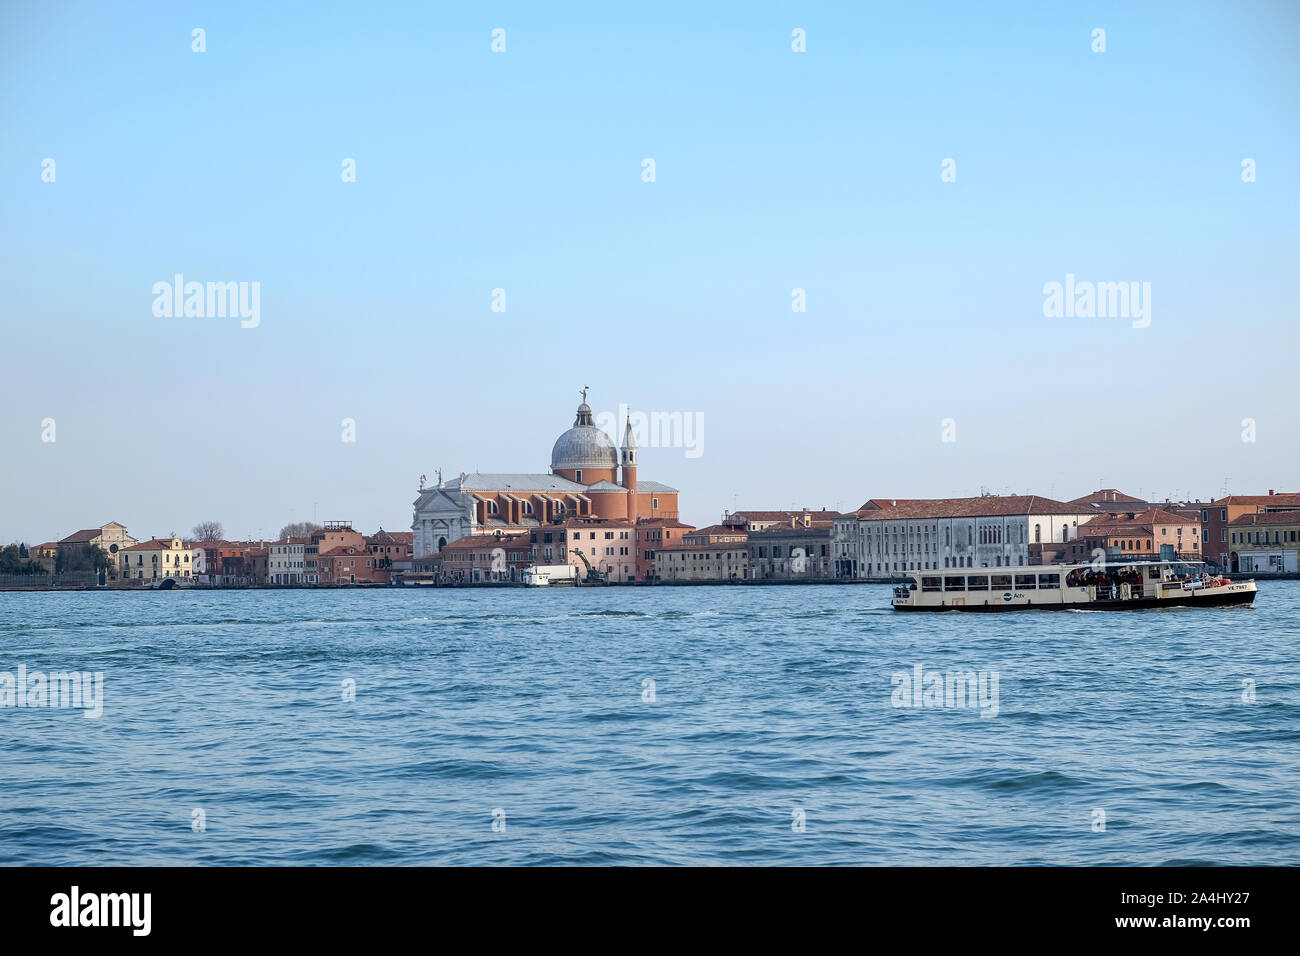 Venise, vue paysage de lagon avec canal et l'église redentore bateau touristique Banque D'Images